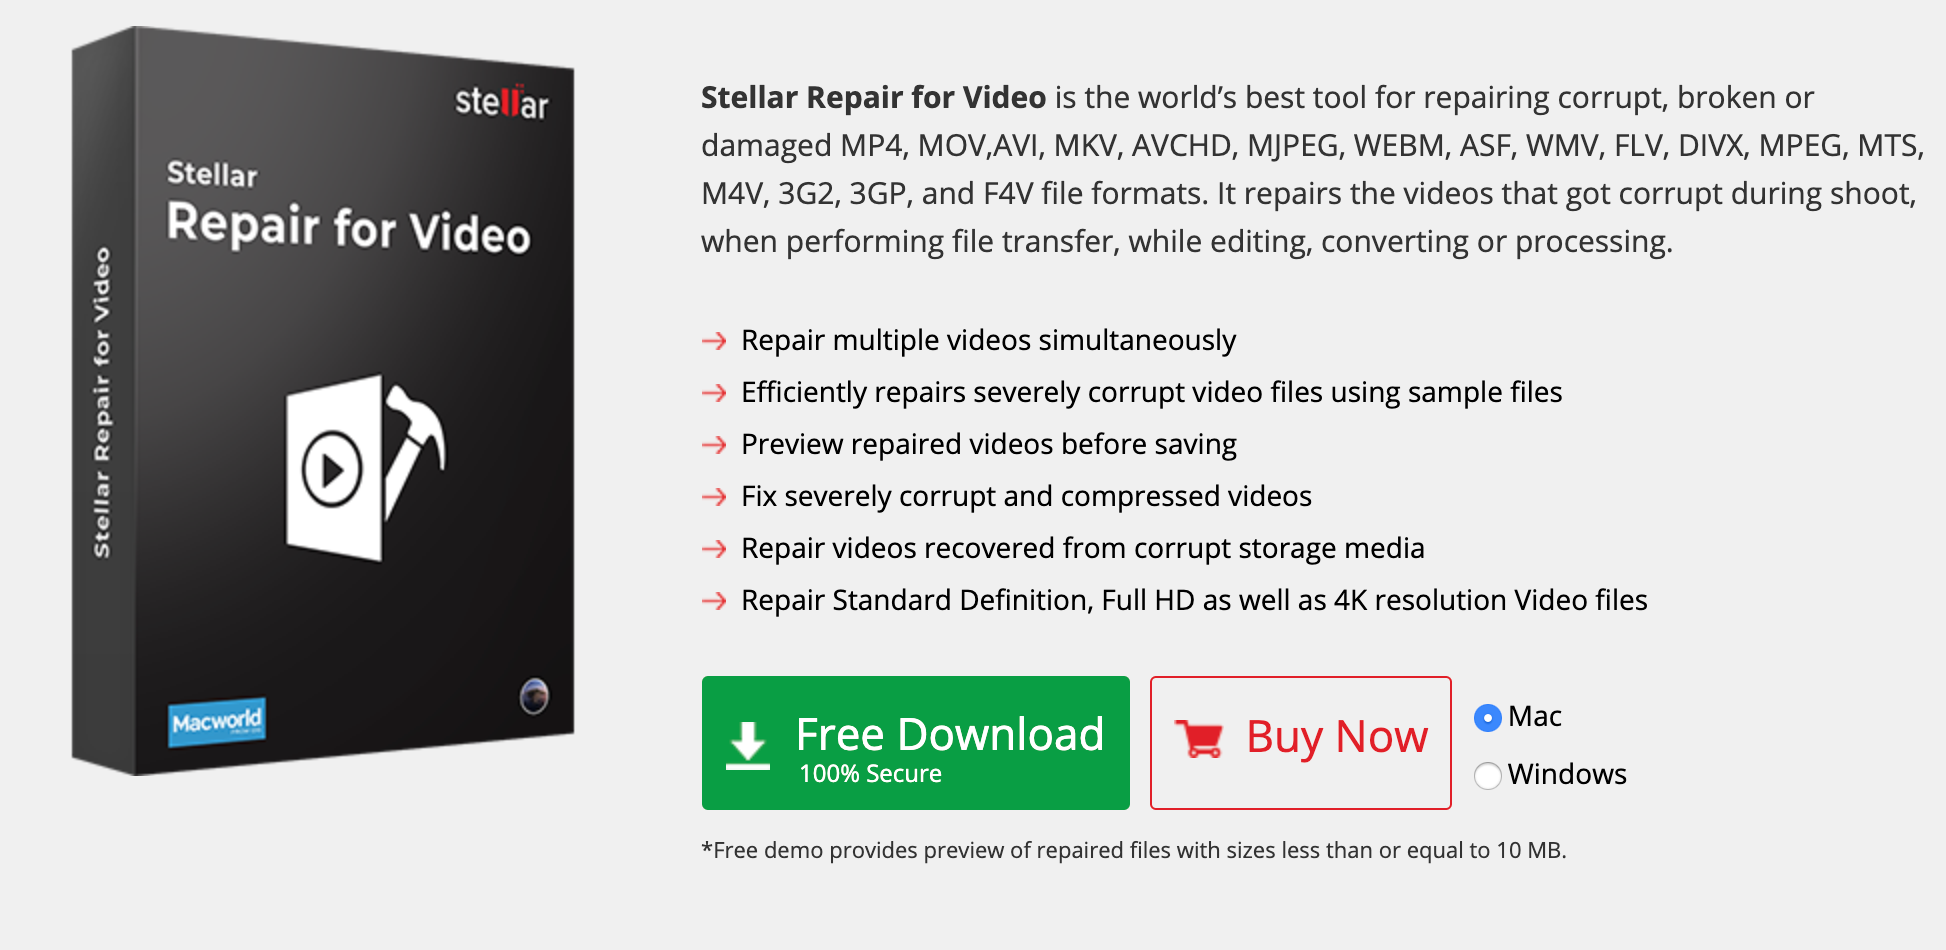 Video Repair Tool - Stellar Repair